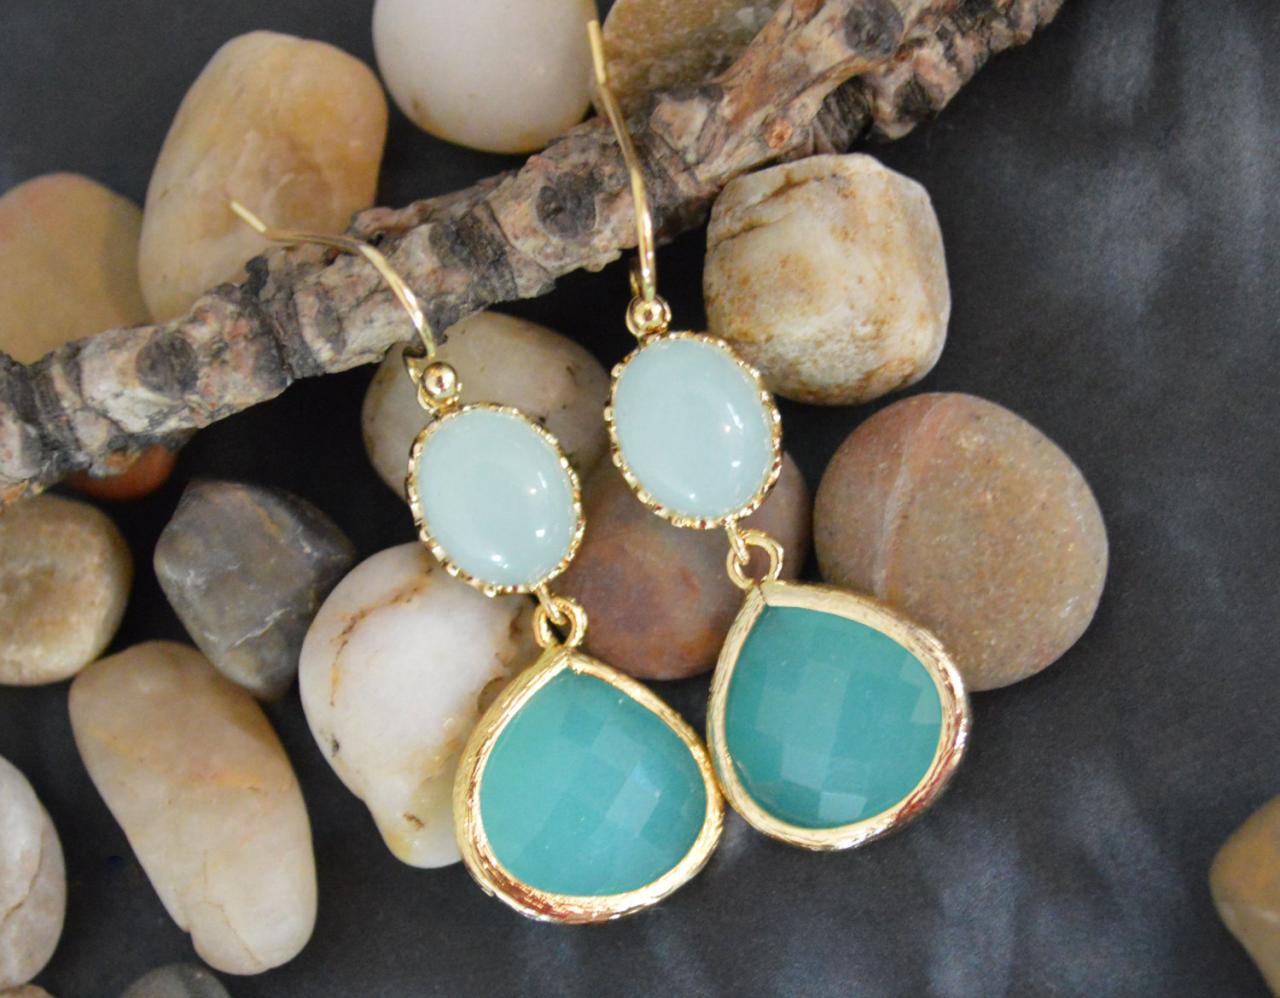 SALE) B-020 Glass mint earrings, Bezel set mint blue drop earrings, Dangle earrings, Gold plated /Bridesmaid gifts/Everyday jewelry/